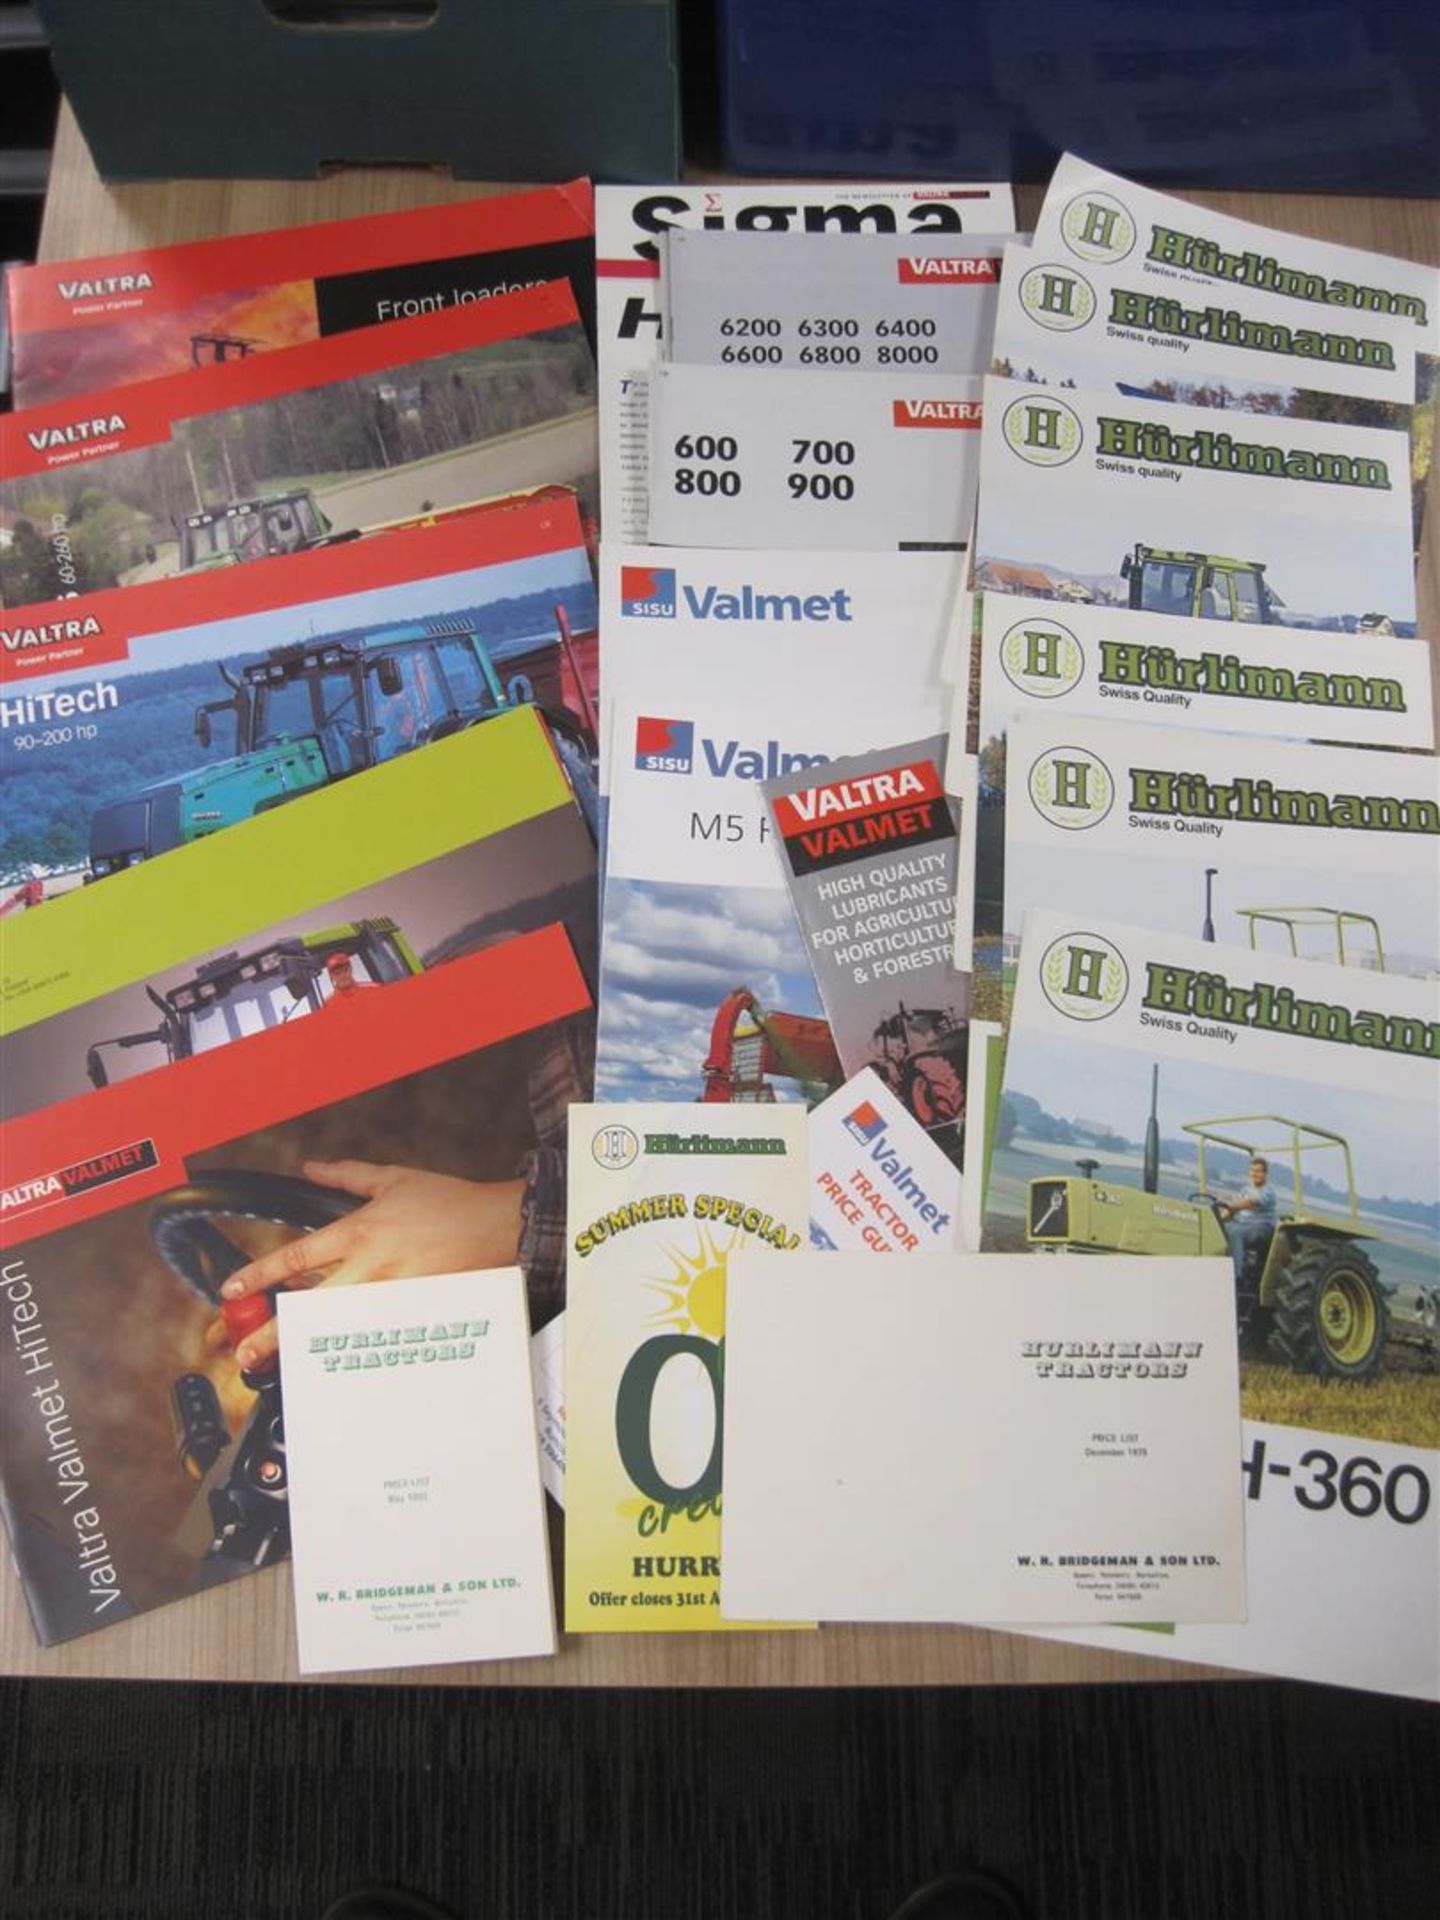 Valtra, Hurliman tractor brochures, flyers, price lists etc. 1970s onwards